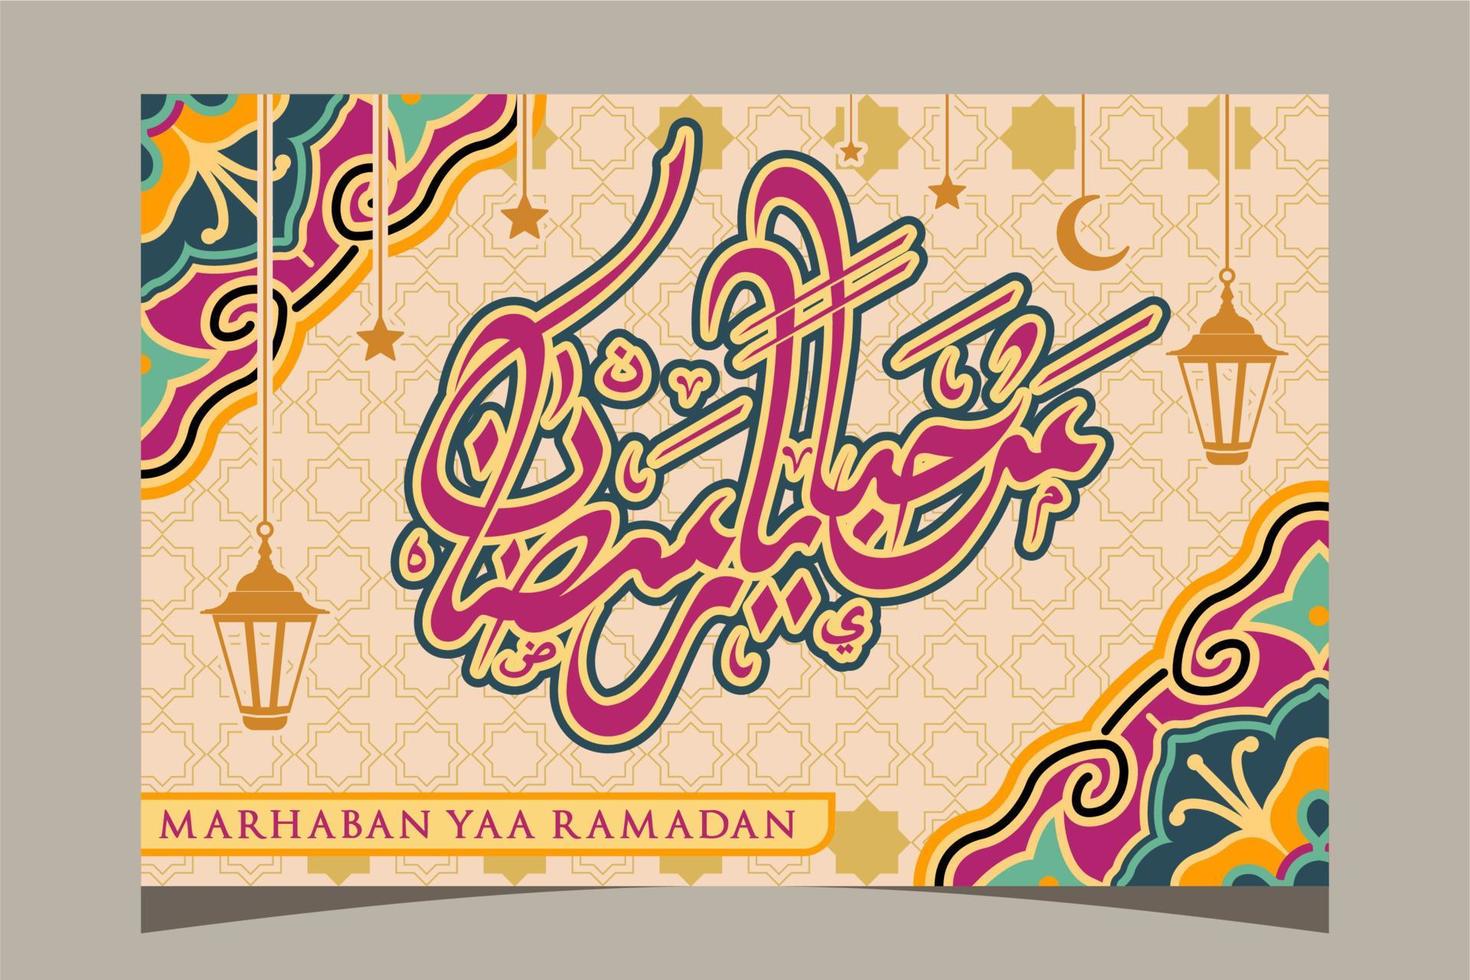 testo calligrafia islamica araba traduzione marhaban ya ramadhan ciao ramadan, può essere utilizzato per modelli di banner per eventi islamici o ramadan vettore